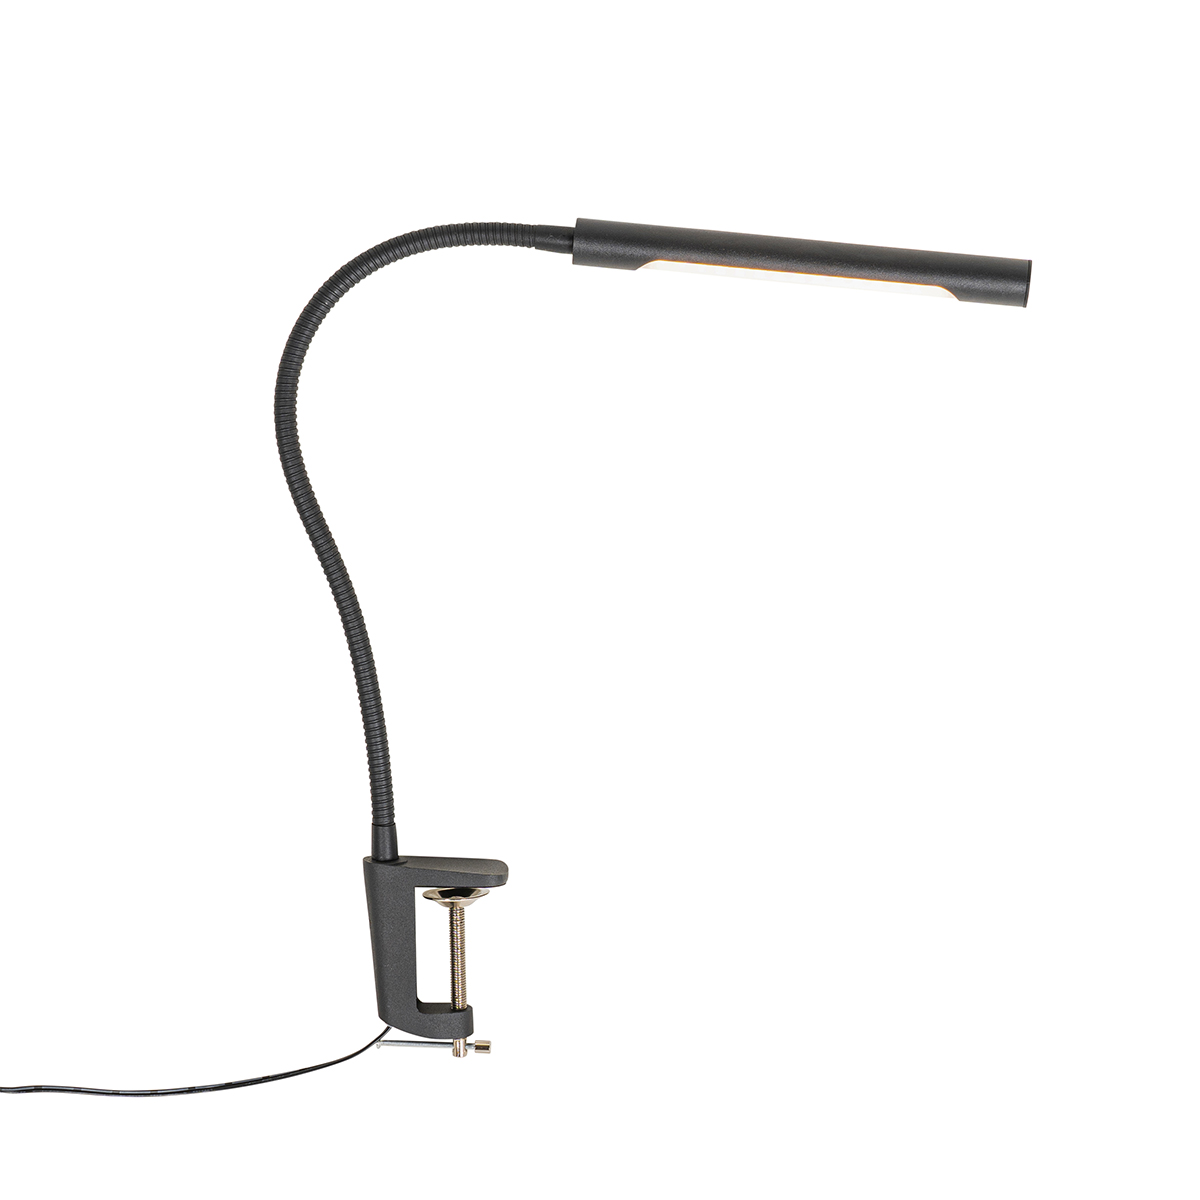 Lampă de birou cu clemă neagră, inclusiv LED cu dimmer tactil - Lionard